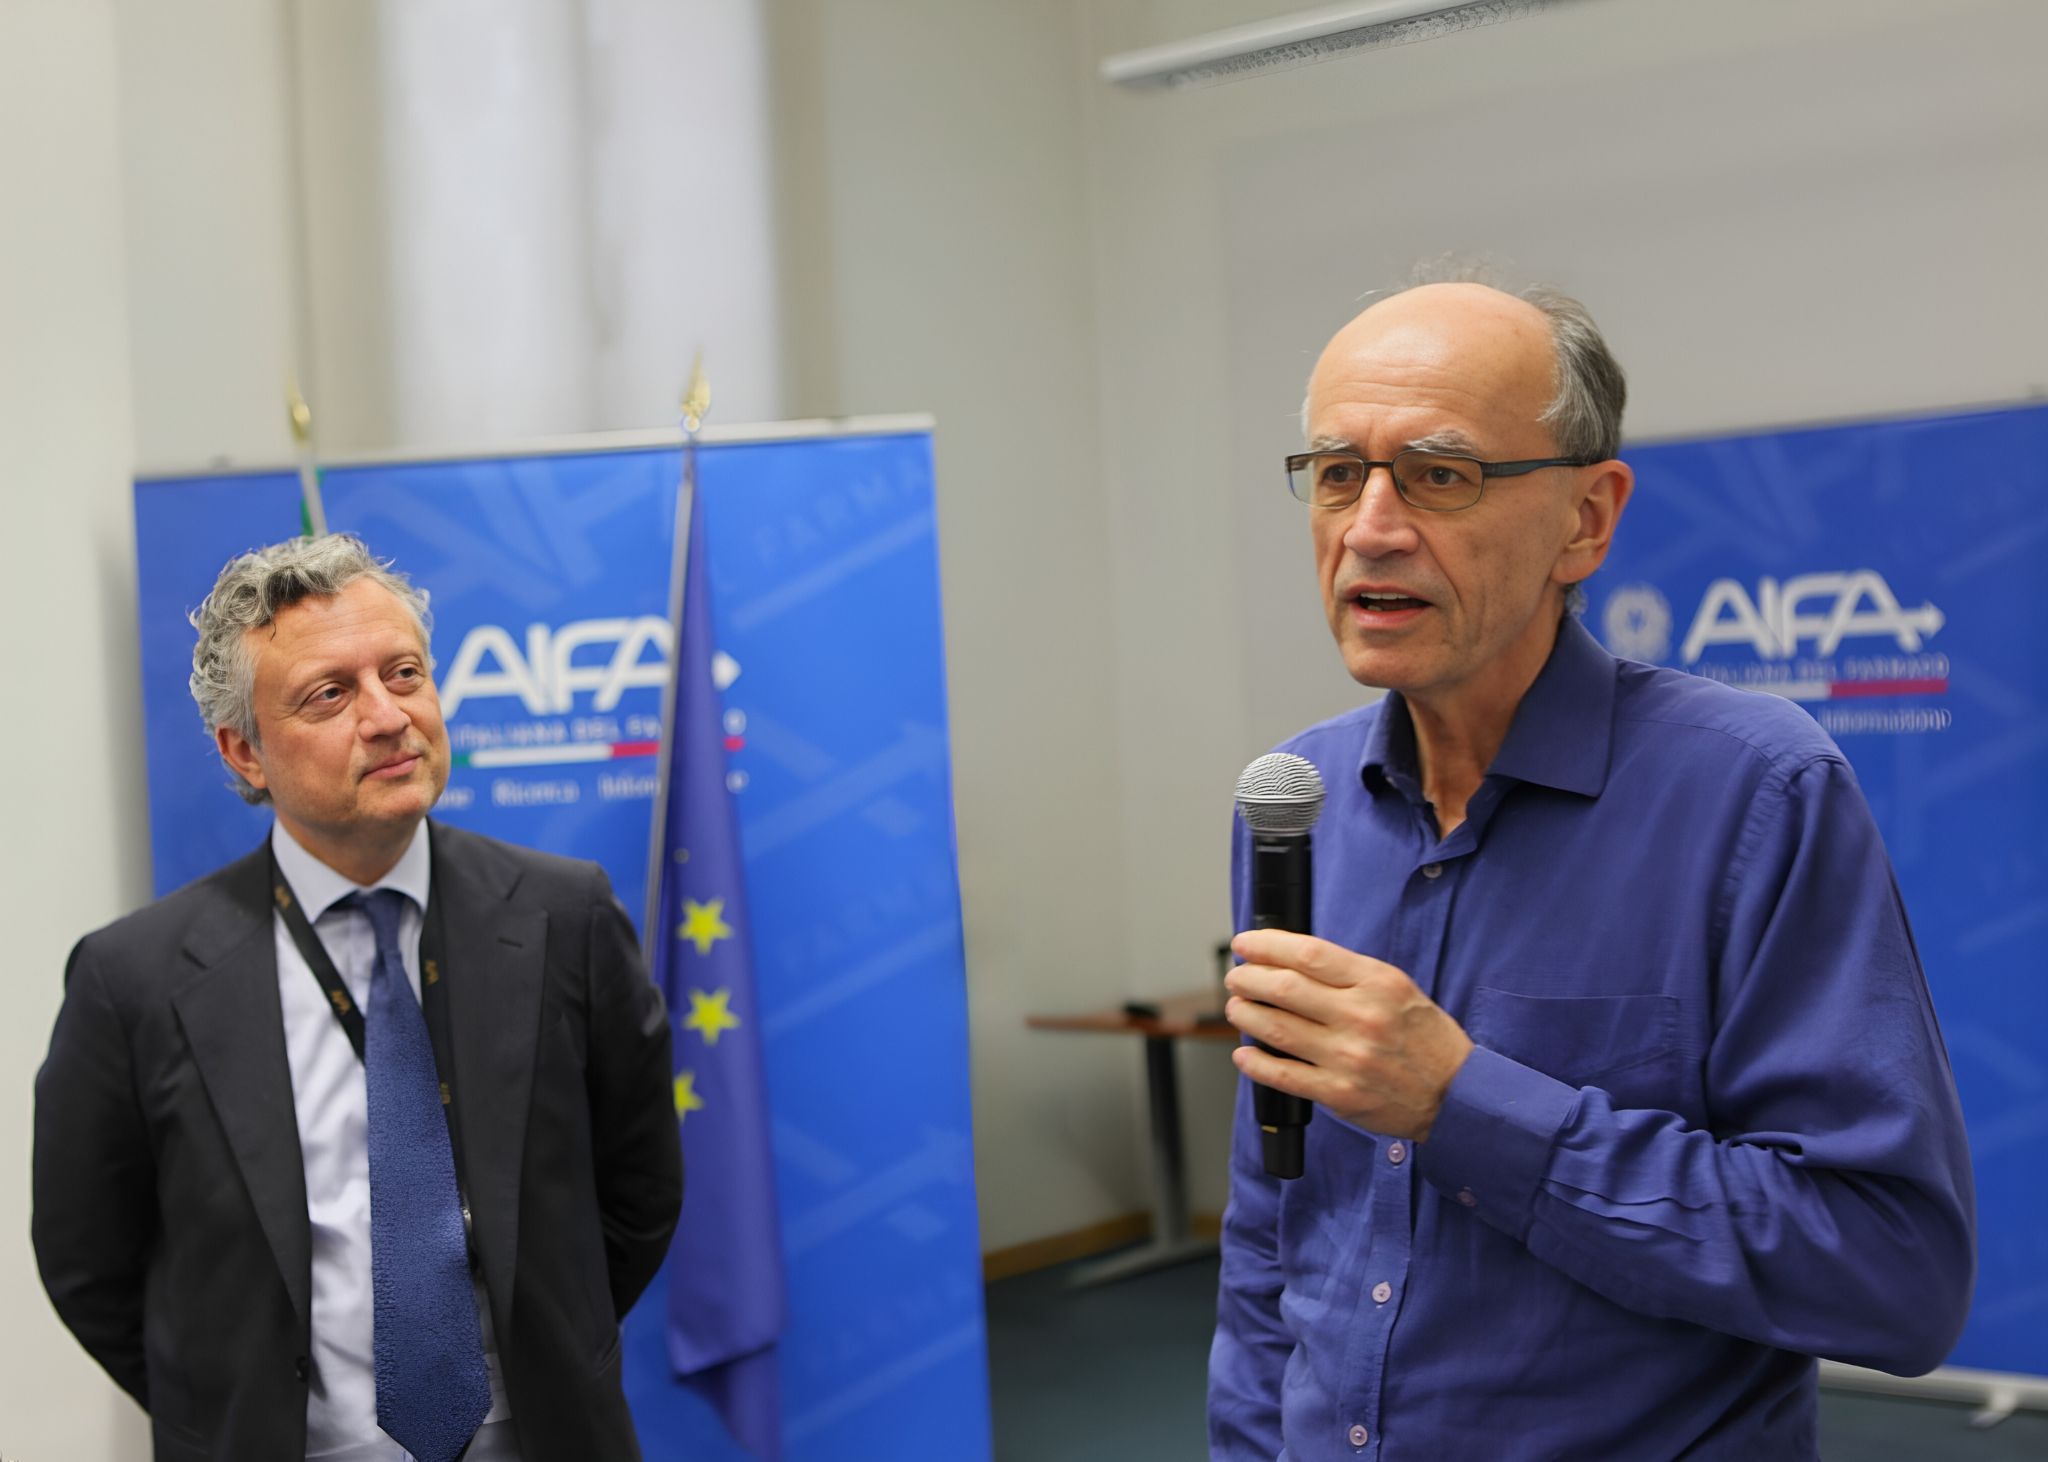 AIFA hosts Nobel Prize in Medicine Thomas Südhof